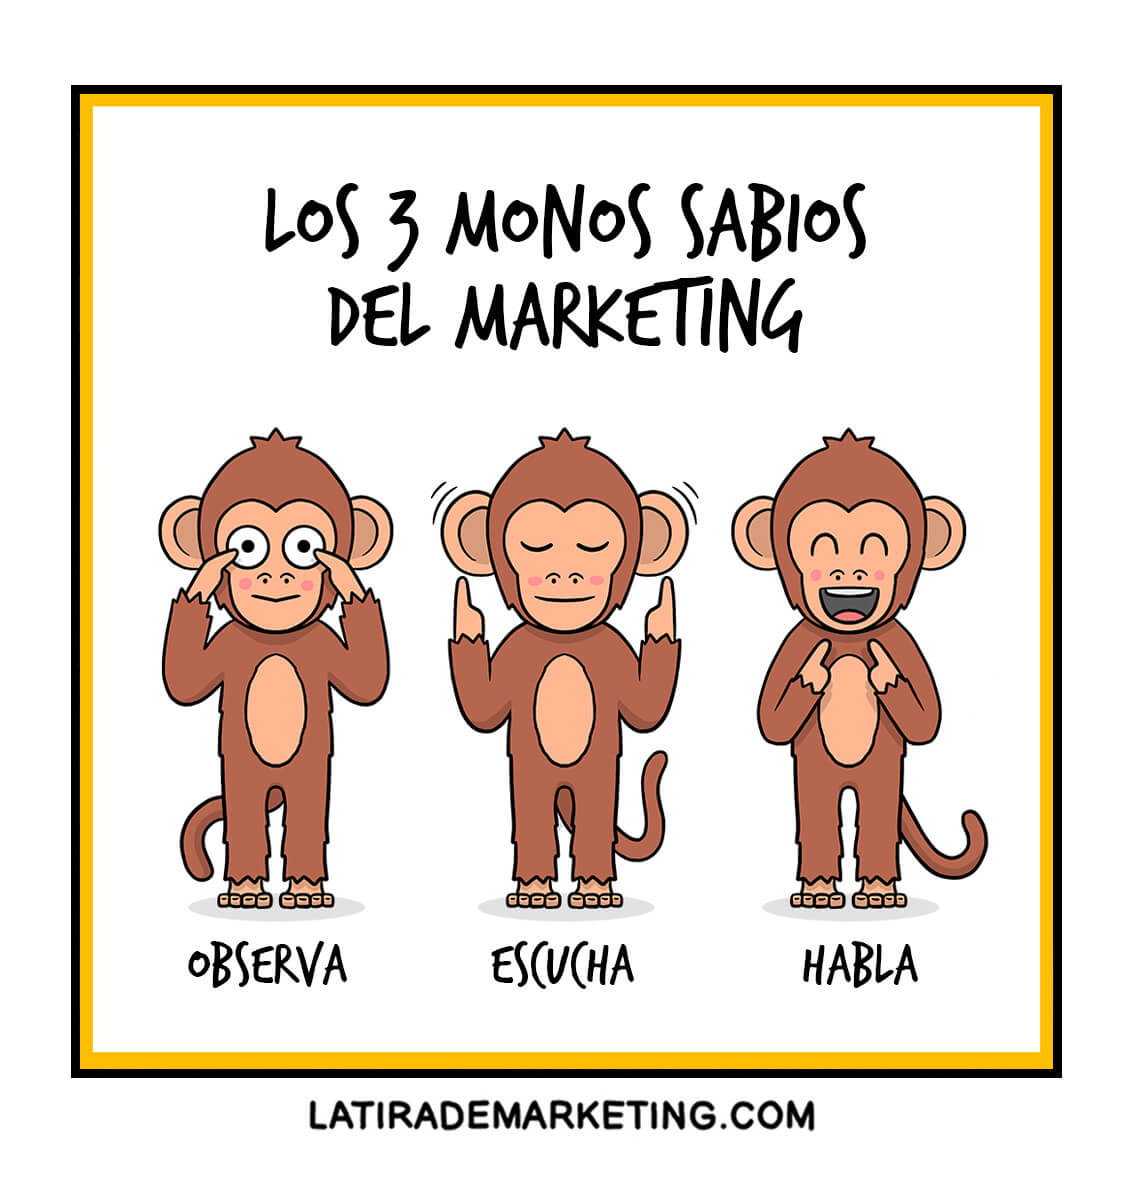 Los tres monos sabios 🙈🙉🙊, Sócrates 🤔 y las claves del marketing de contenidos 🔑🔑🔑. mtr.cool/qtdeehjgqu #MarketingdeContenidos #MarketingIlustrado